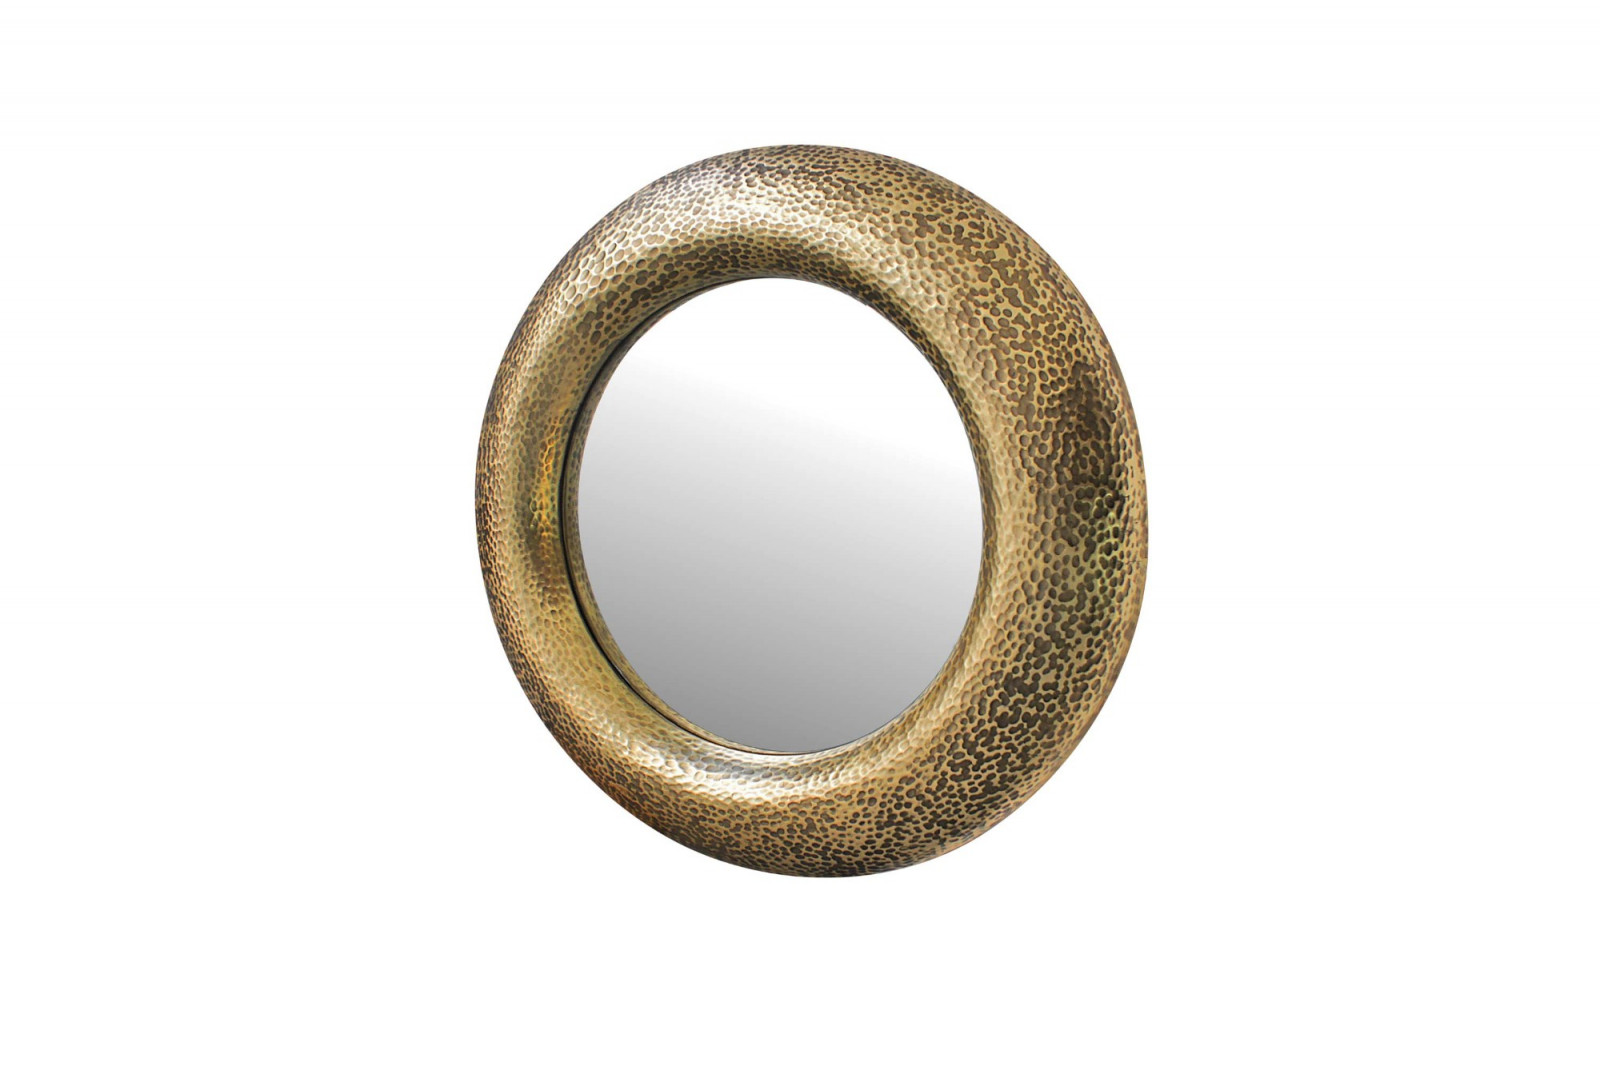 mirror_exclusive_luxurious_textured_gold_glass_millenium_round_gansk_3-1363-1600-1400-100